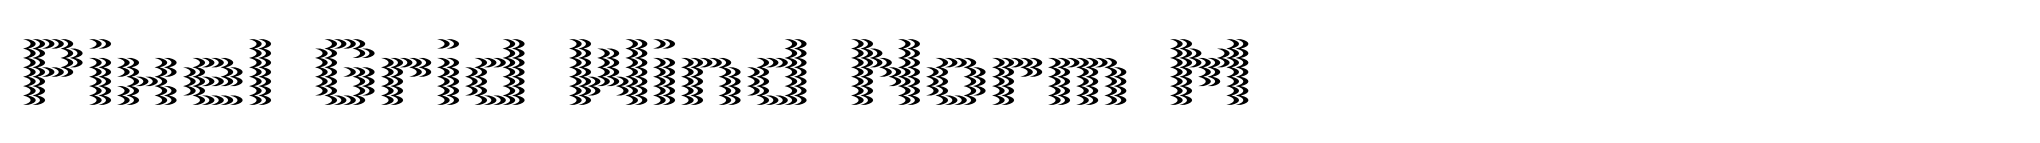 Pixel Grid Wind Norm M image